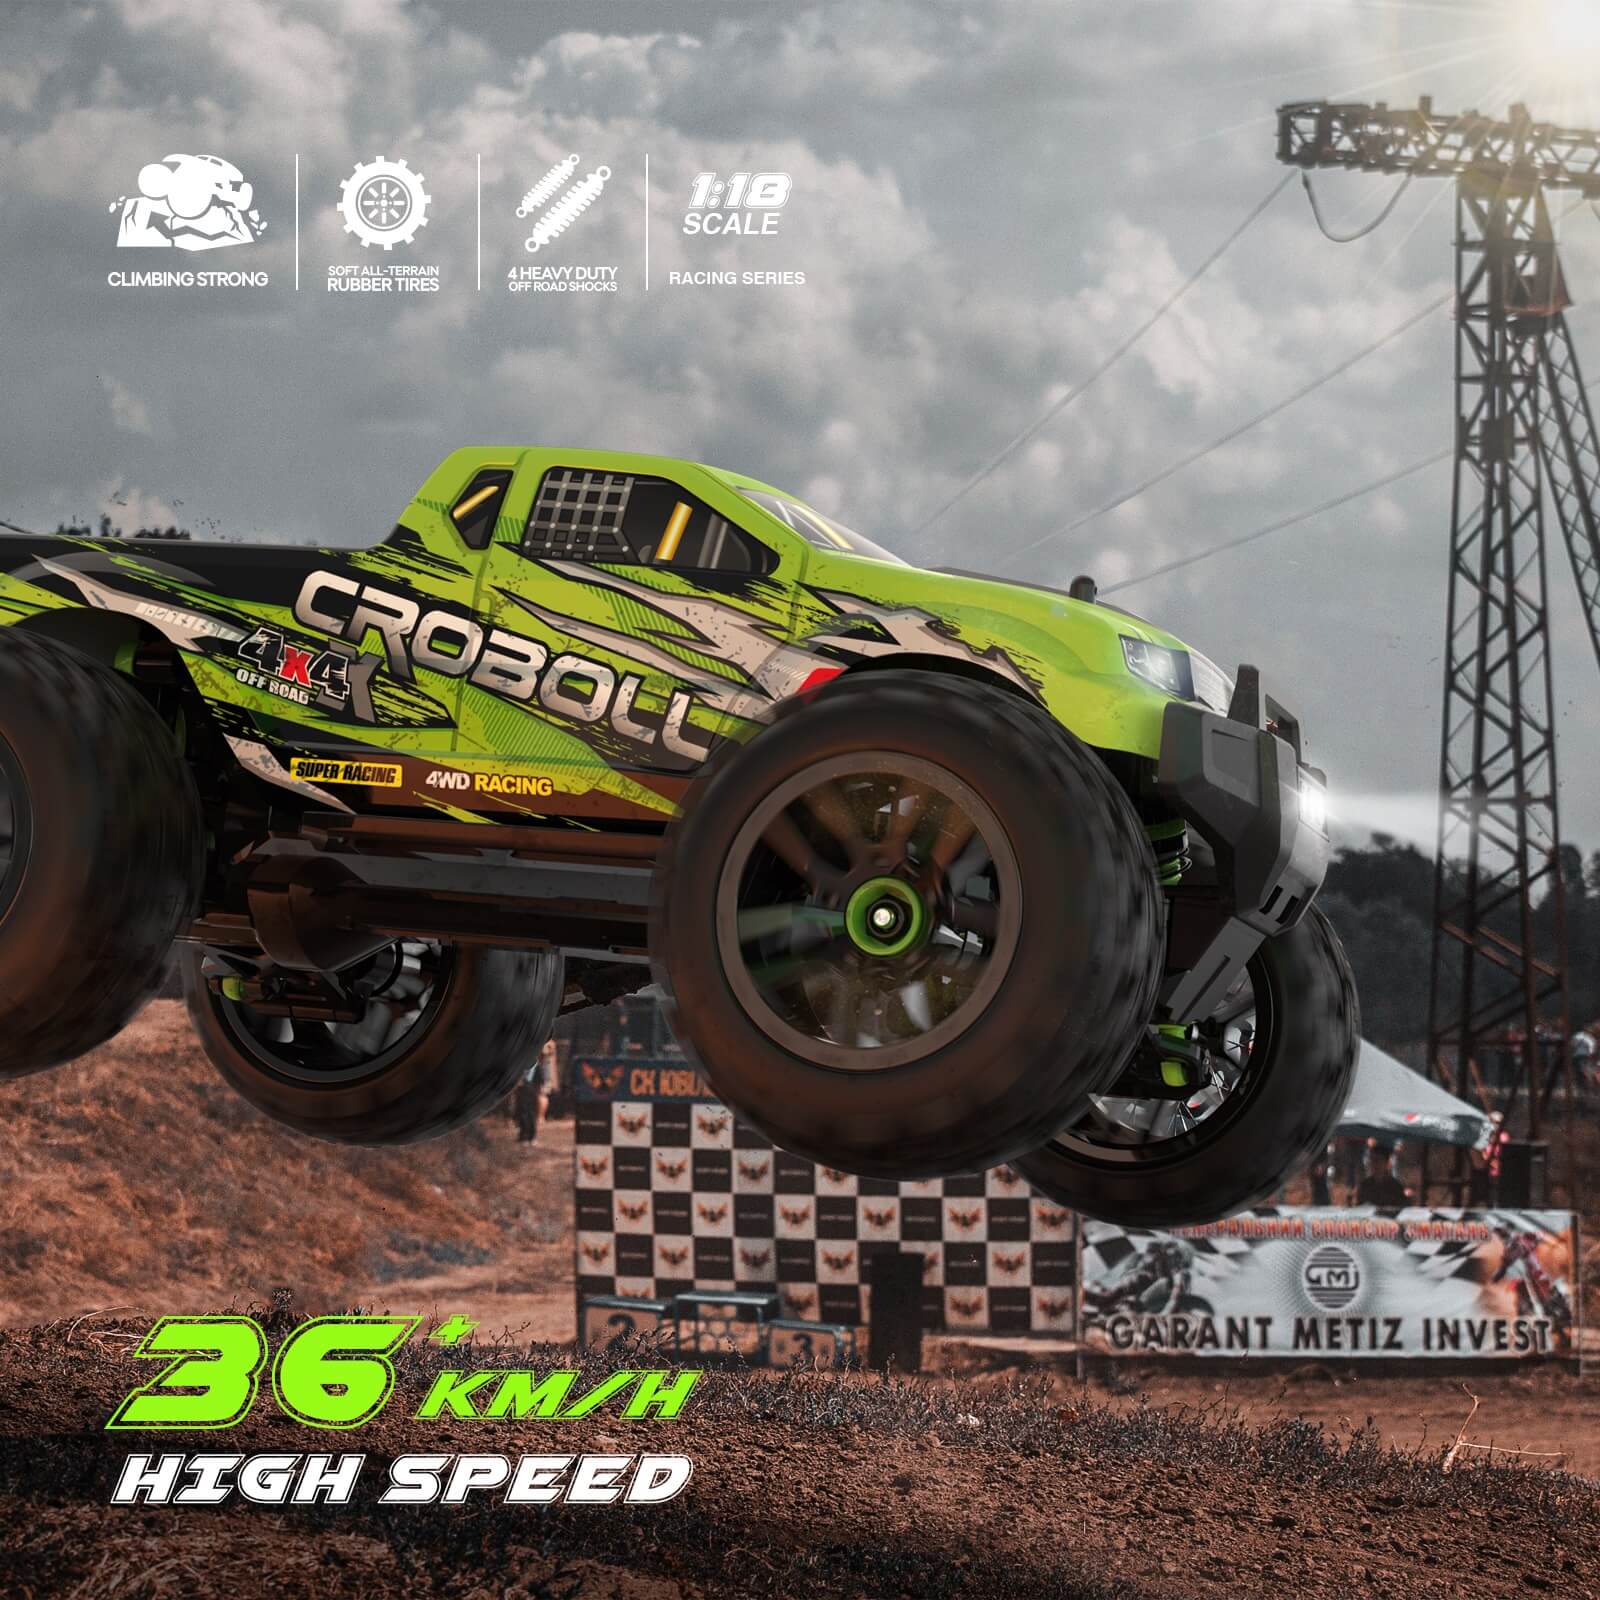 CROBOLL 1:18 Monster Truck 36 KPH High Speed RTR (2 Batteries